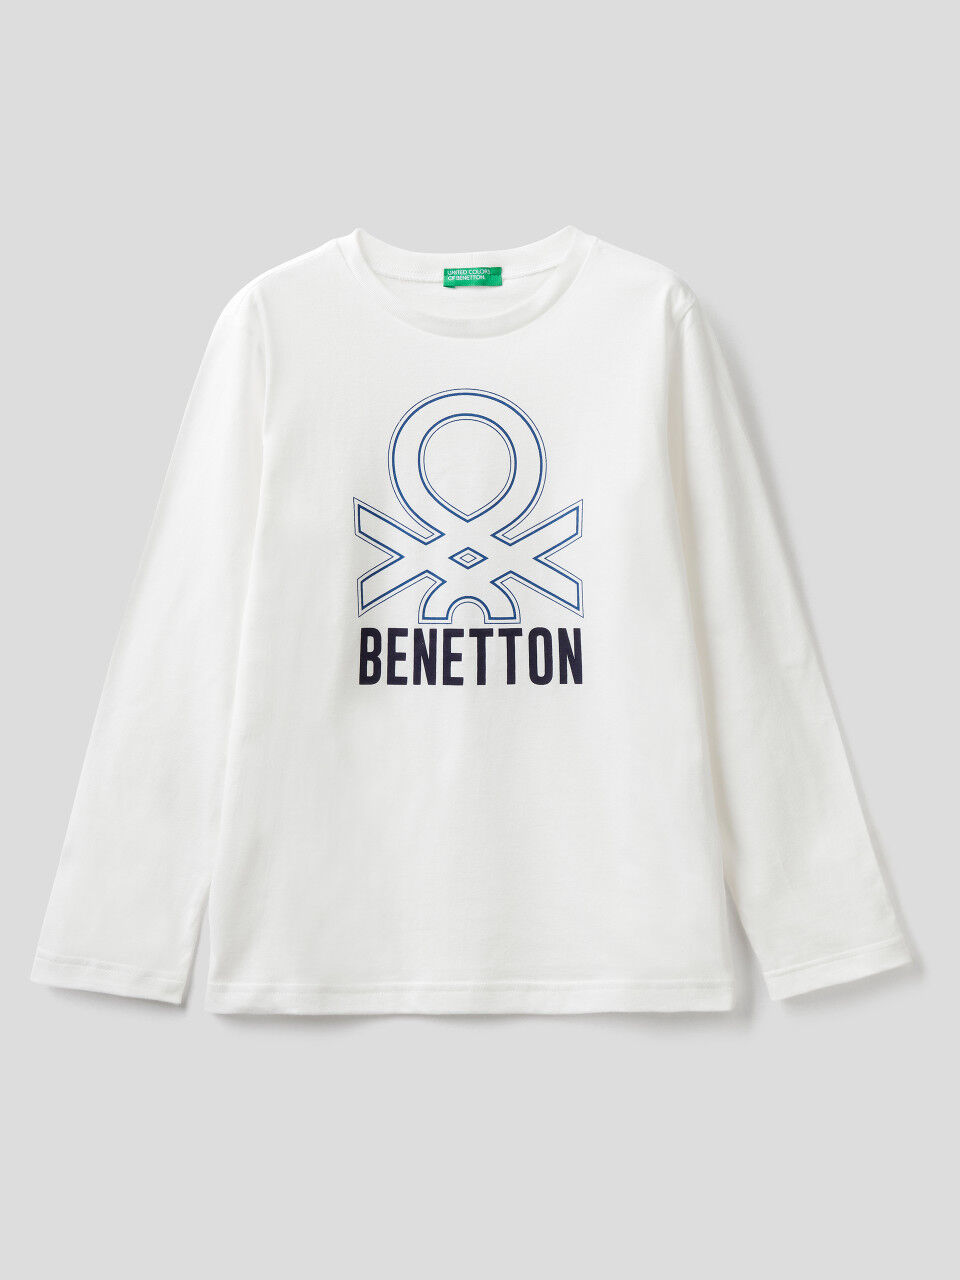 United Colors of Benetton Camiseta para Niños 